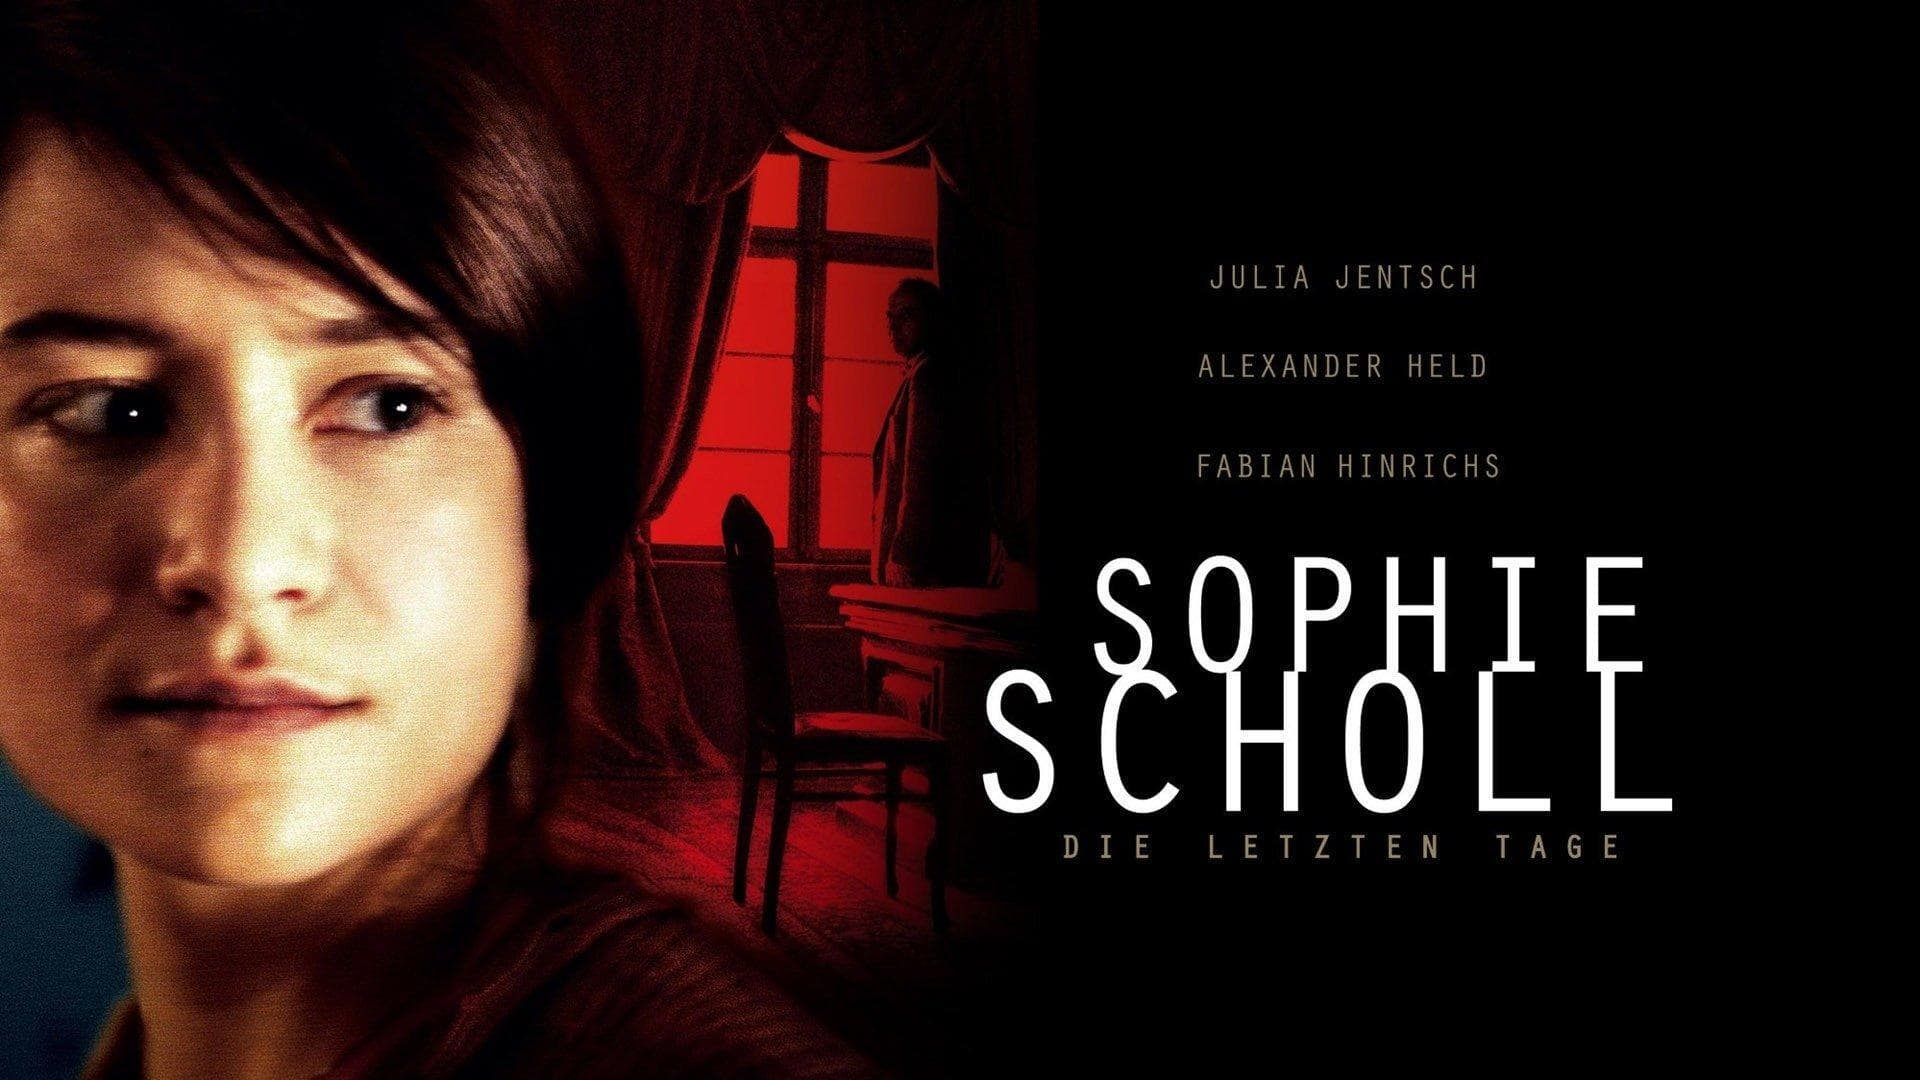 Image du film Sophie Scholl, les derniers jours 8u9gfw8rvbkfohexynxz6pavpfqjpg